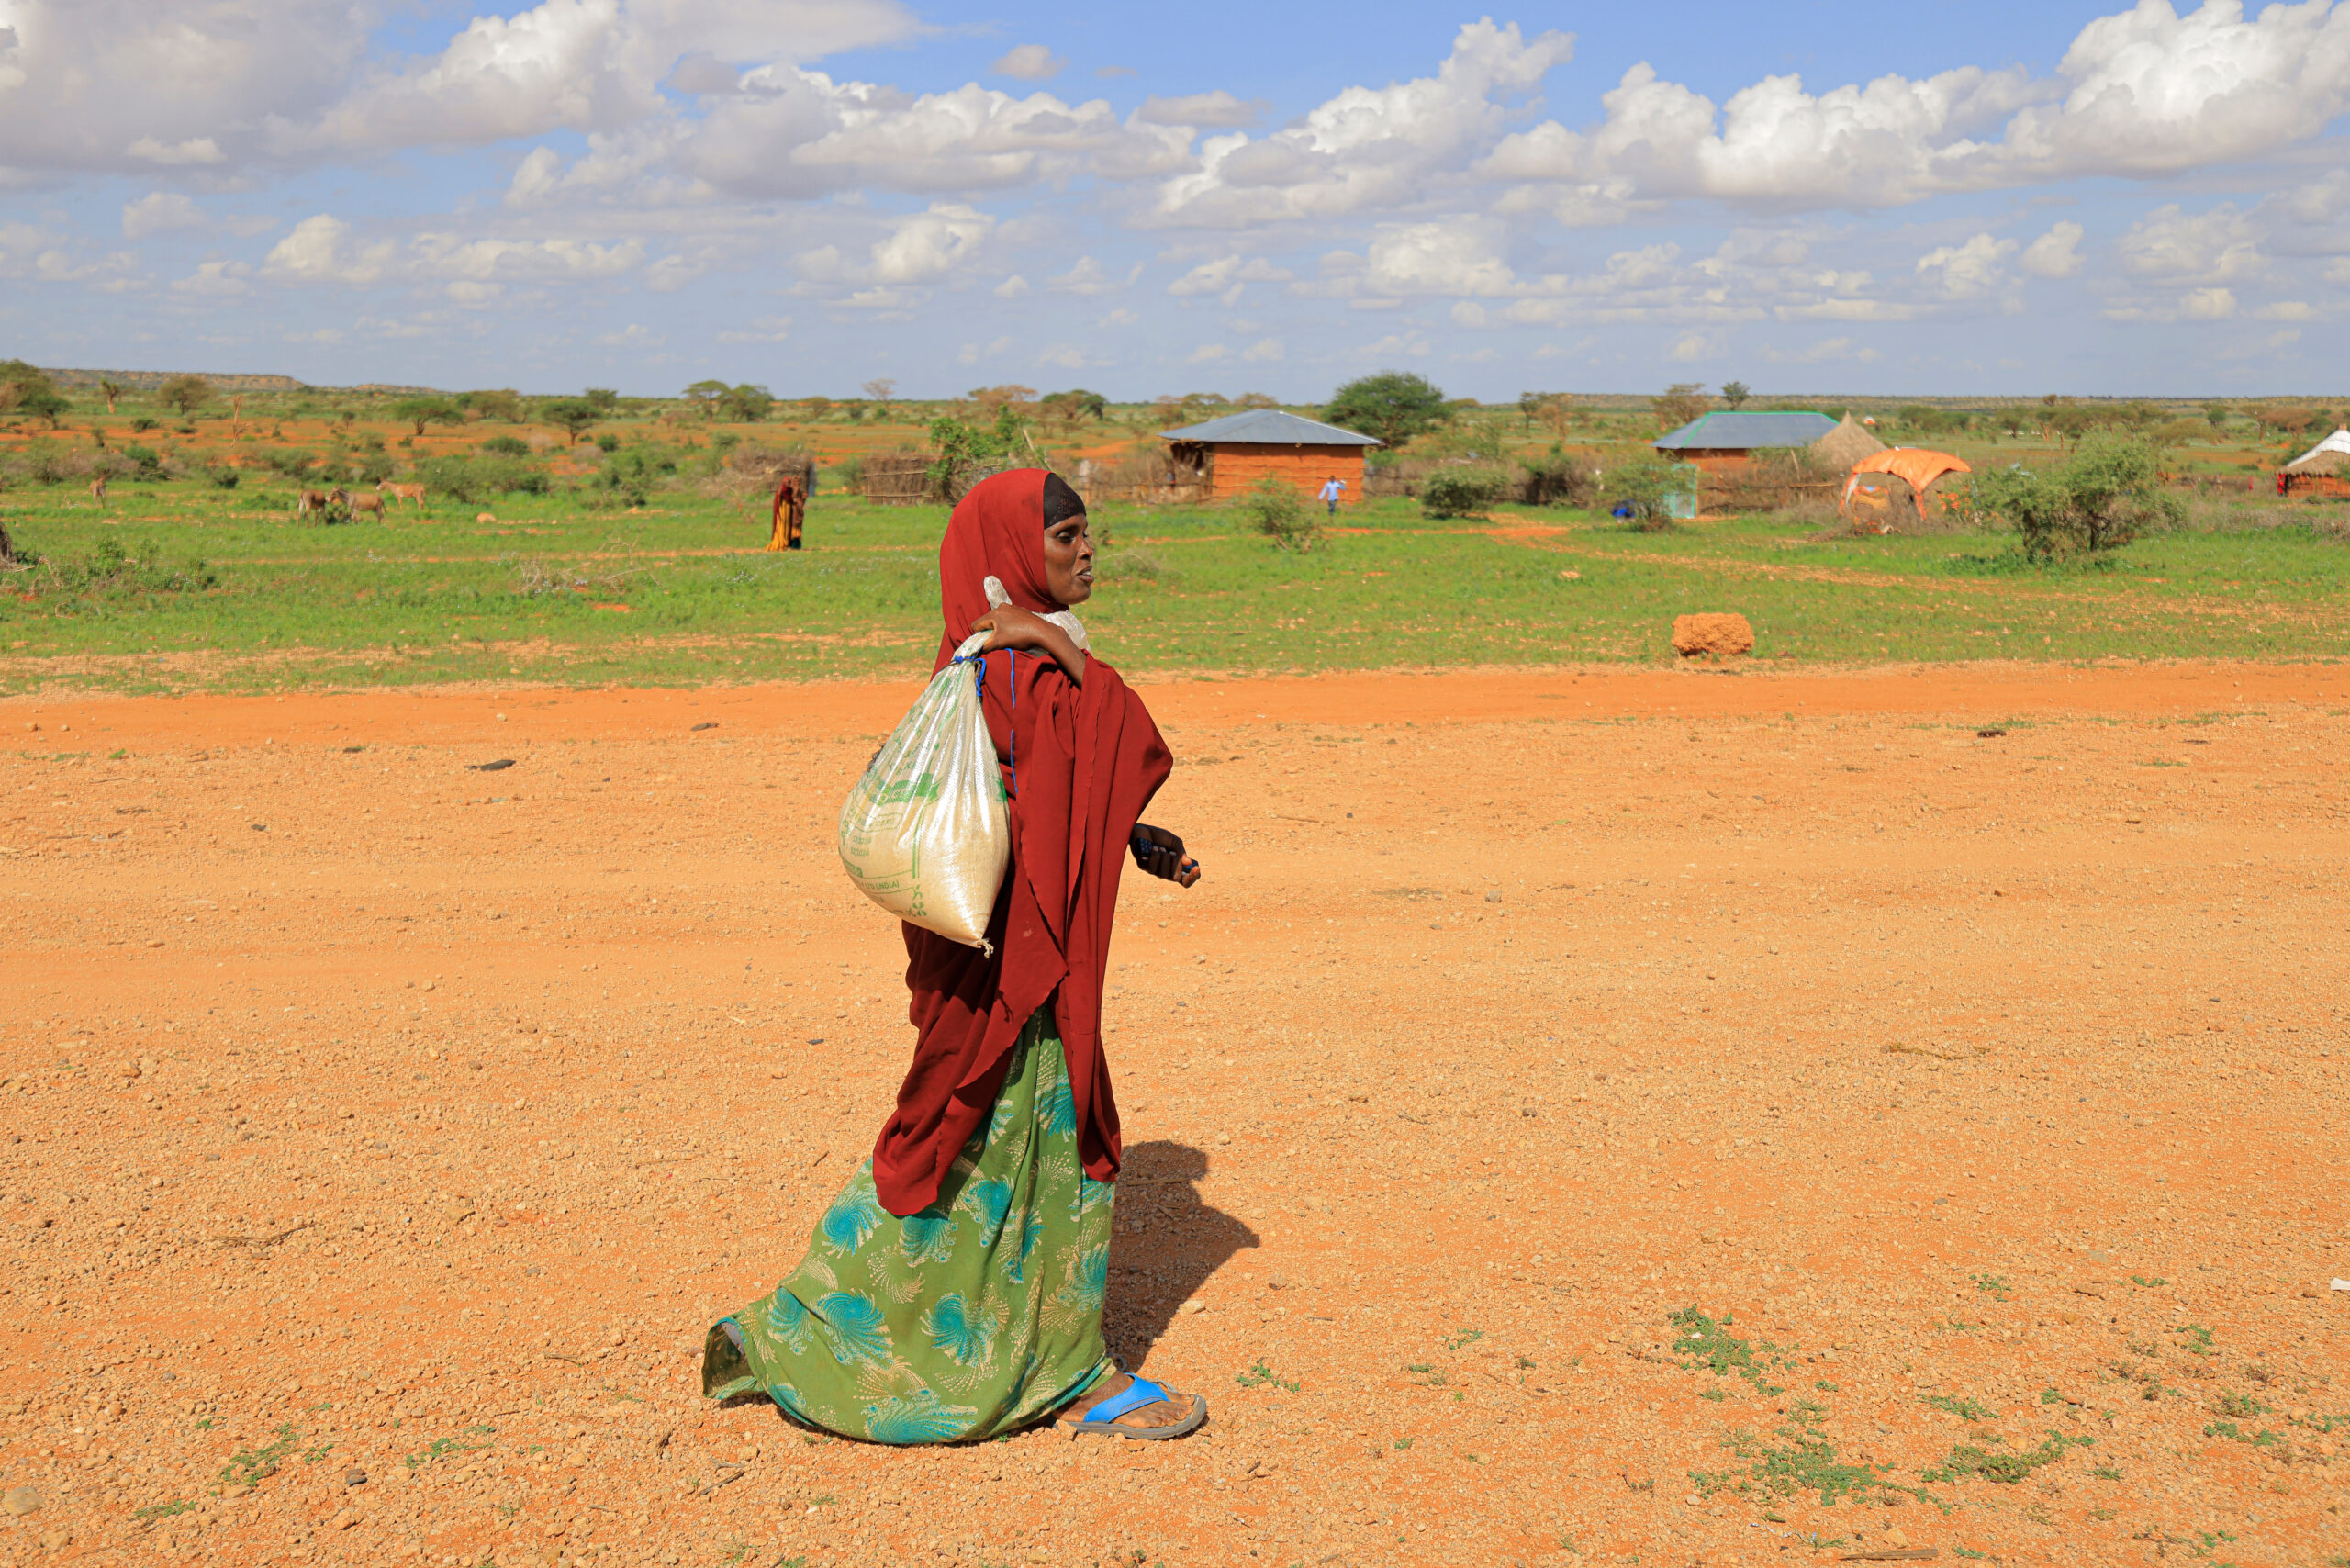 หญิงผู้พลัดถิ่นจากภัยแล้งรุนแรงในประเทศเอธิโอเปียคนหนึ่ง กำลังกลับไปยังที่พักพิงของเธอหลังจากไปซื้อของชำด้วยเงินสดที่ได้รับจากการช่วยเหลือของ UNHCR © UNHCR/Tiksa Negeri